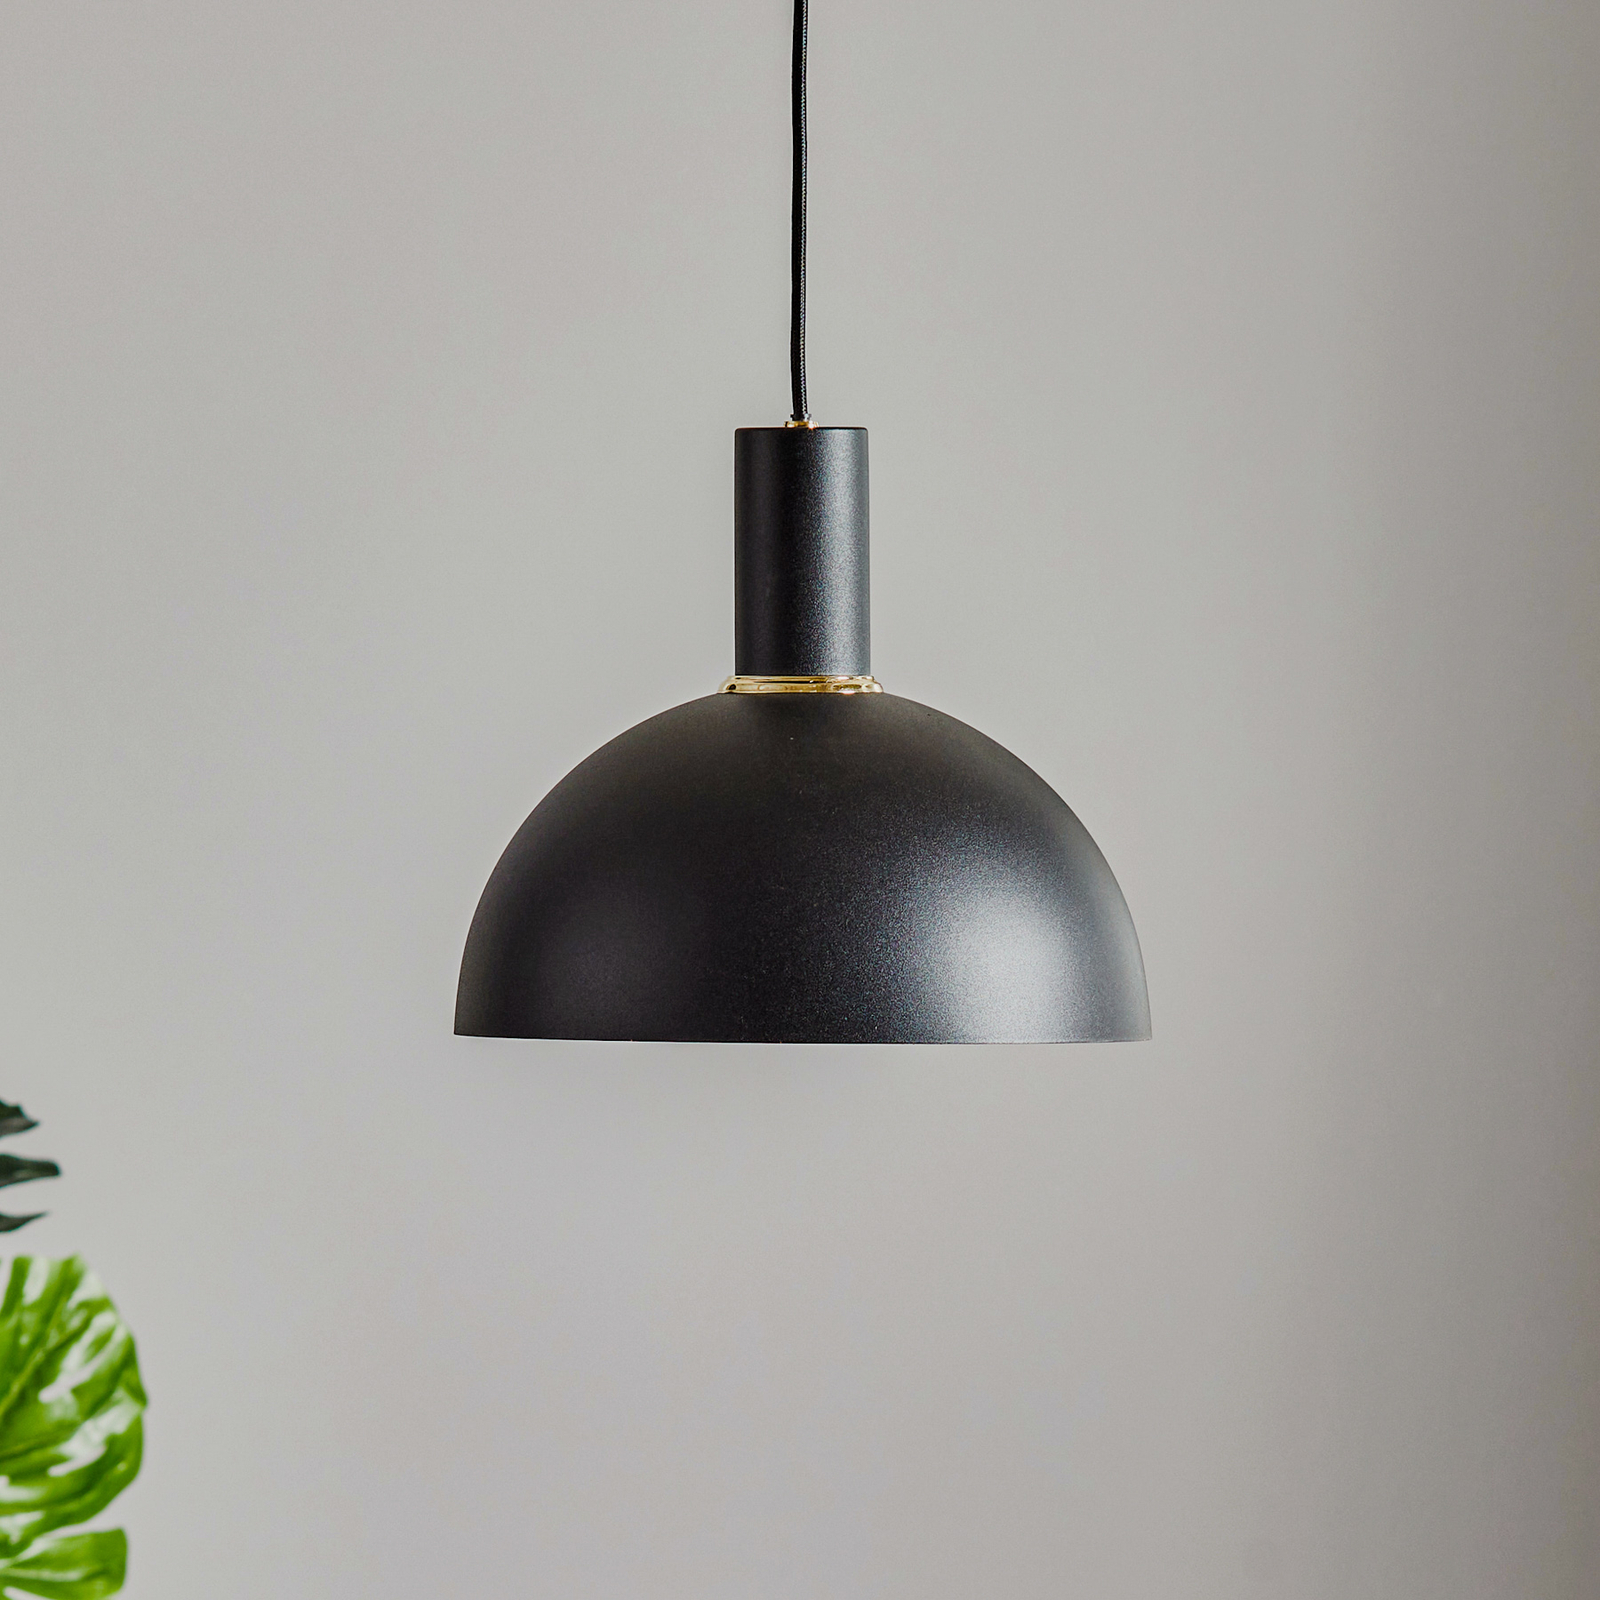 Selma hængelampe, 1 lyskilde, sort, Ø 22 cm